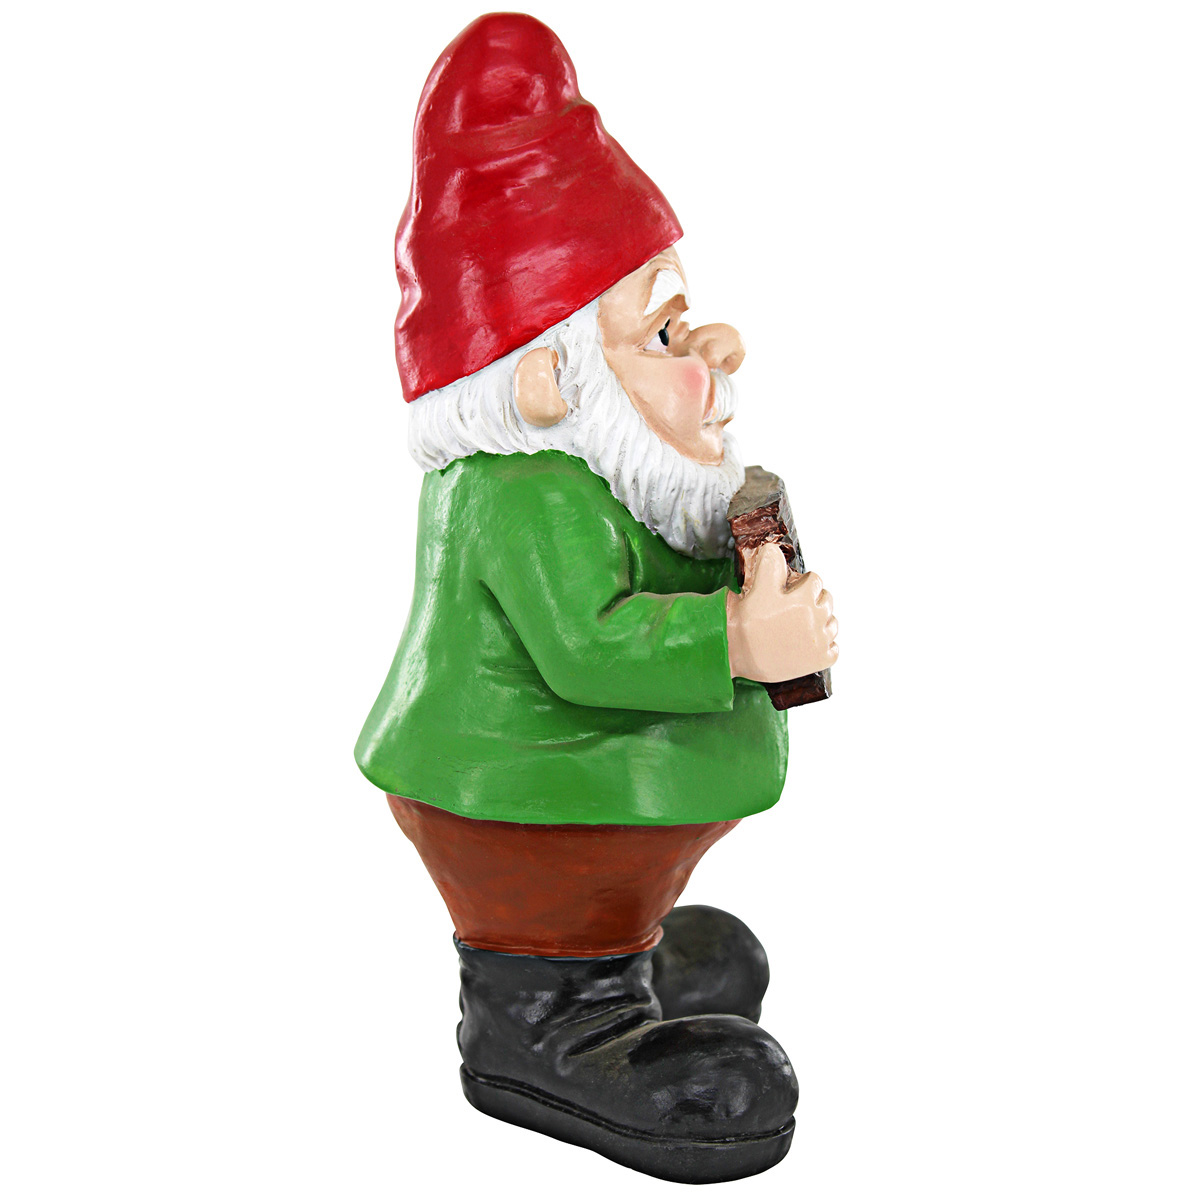 Picture 4 for Mr Bad Attitude "Go Away" Gnome Statue